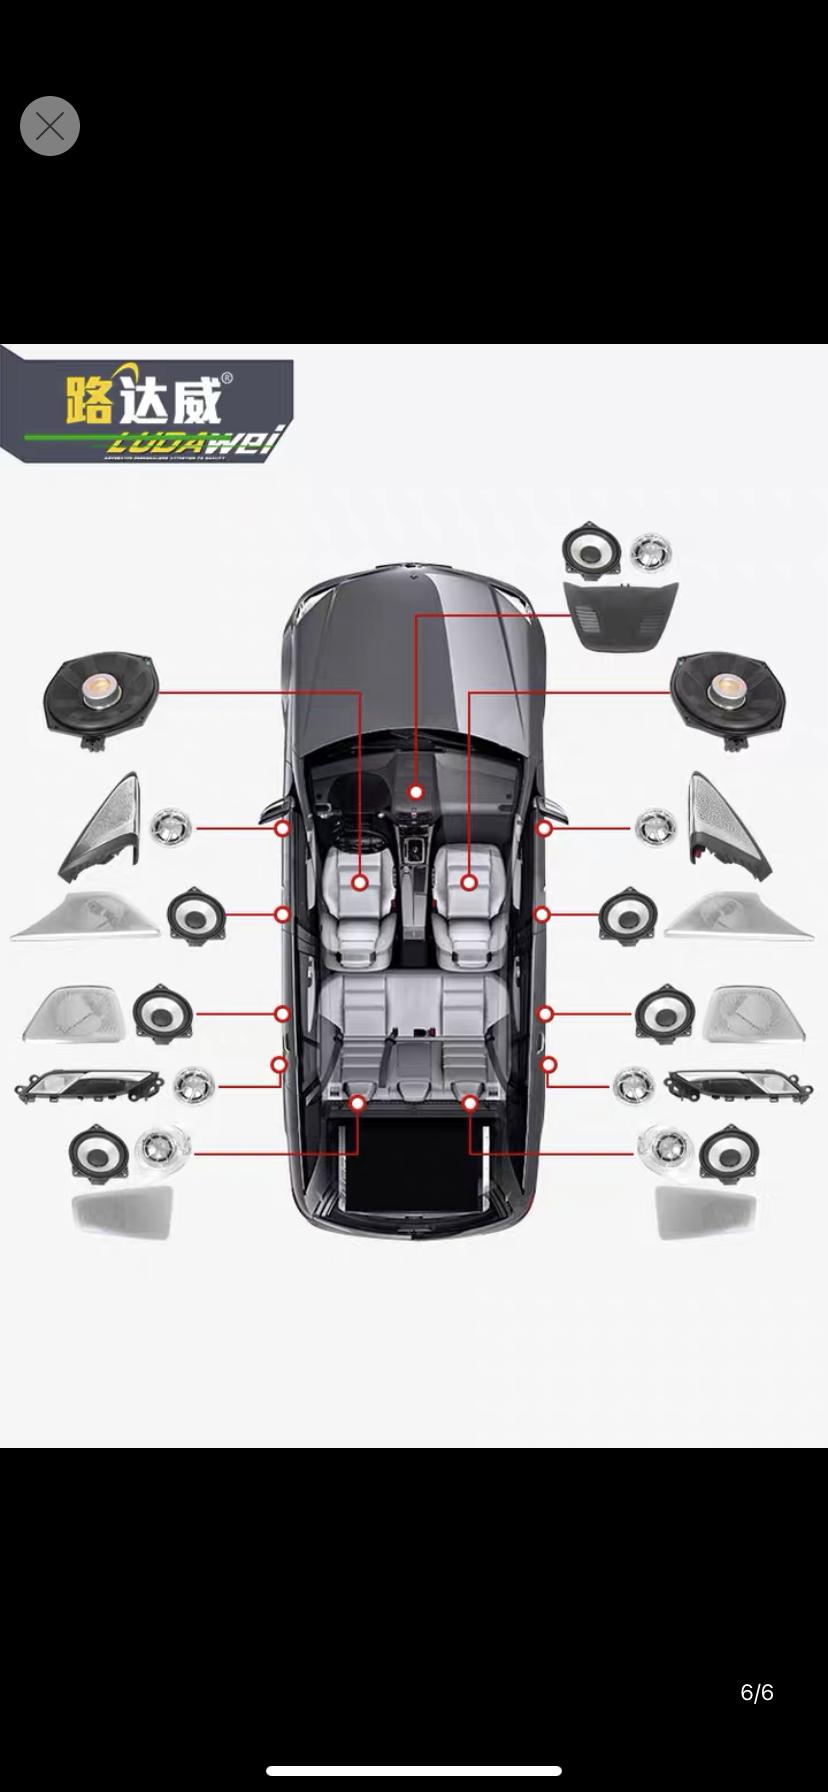 宝马6系GT 6GT运动刚提车1个月  想改发光喇叭，改了以后  厂家还给质保吗？有没有懂的大哥